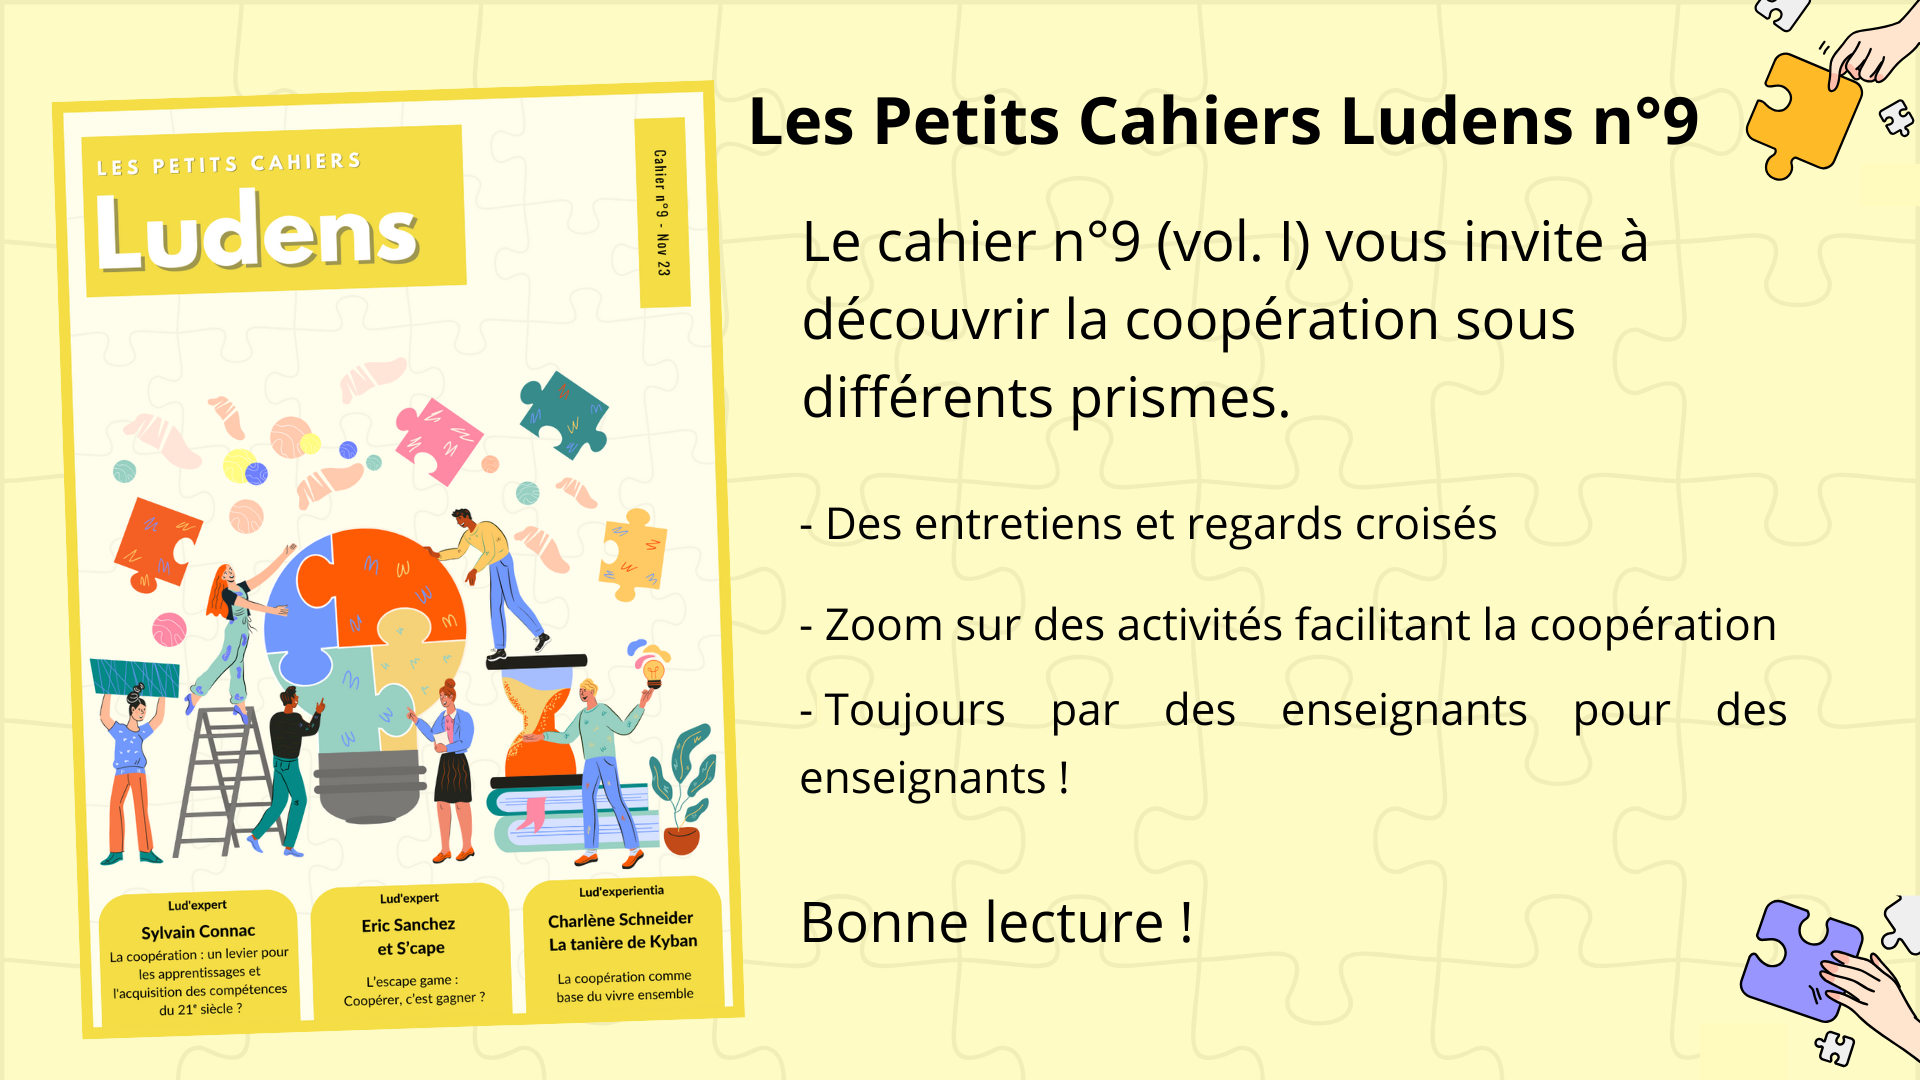 Lire la suite à propos de l’article Les Petits Cahiers Ludens n°9 : la coopération comme clé des apprentissages